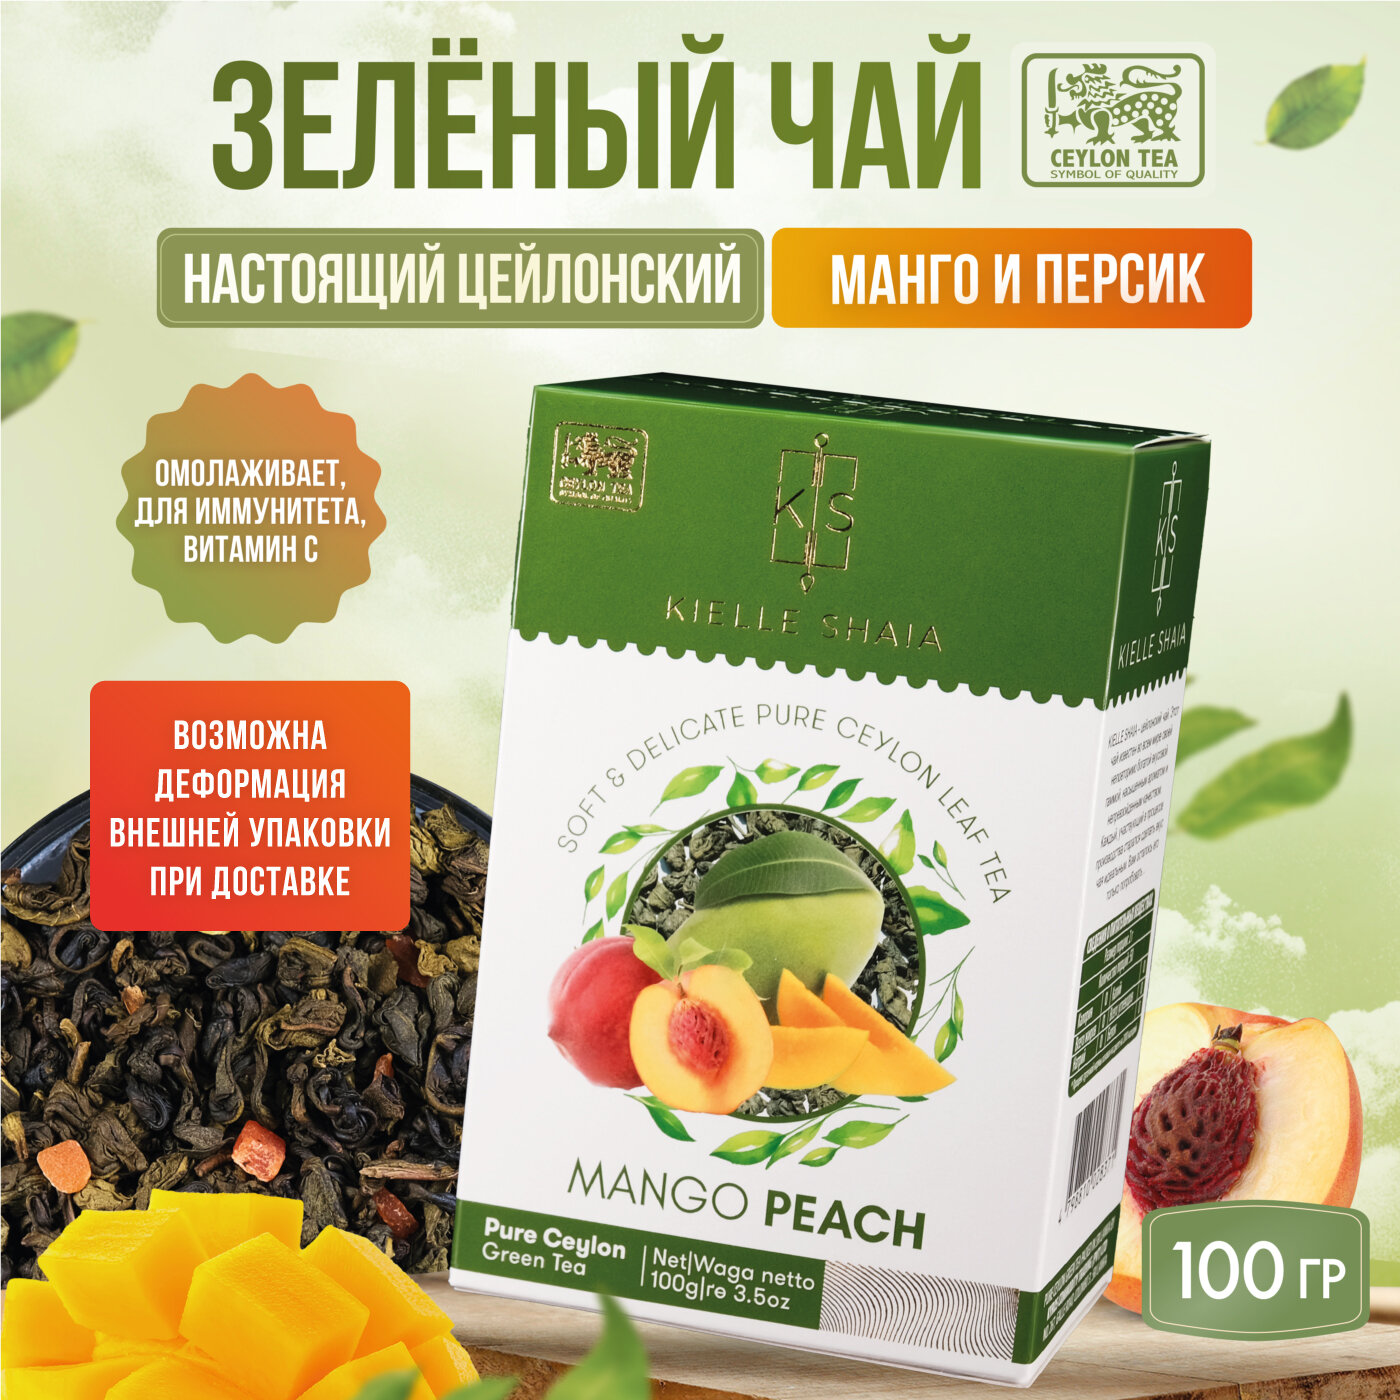 Чай фруктовый зеленый листовой цейлонский со вкусом манго и персика MANGO PEACH KIELLE SHAIA, 100 г